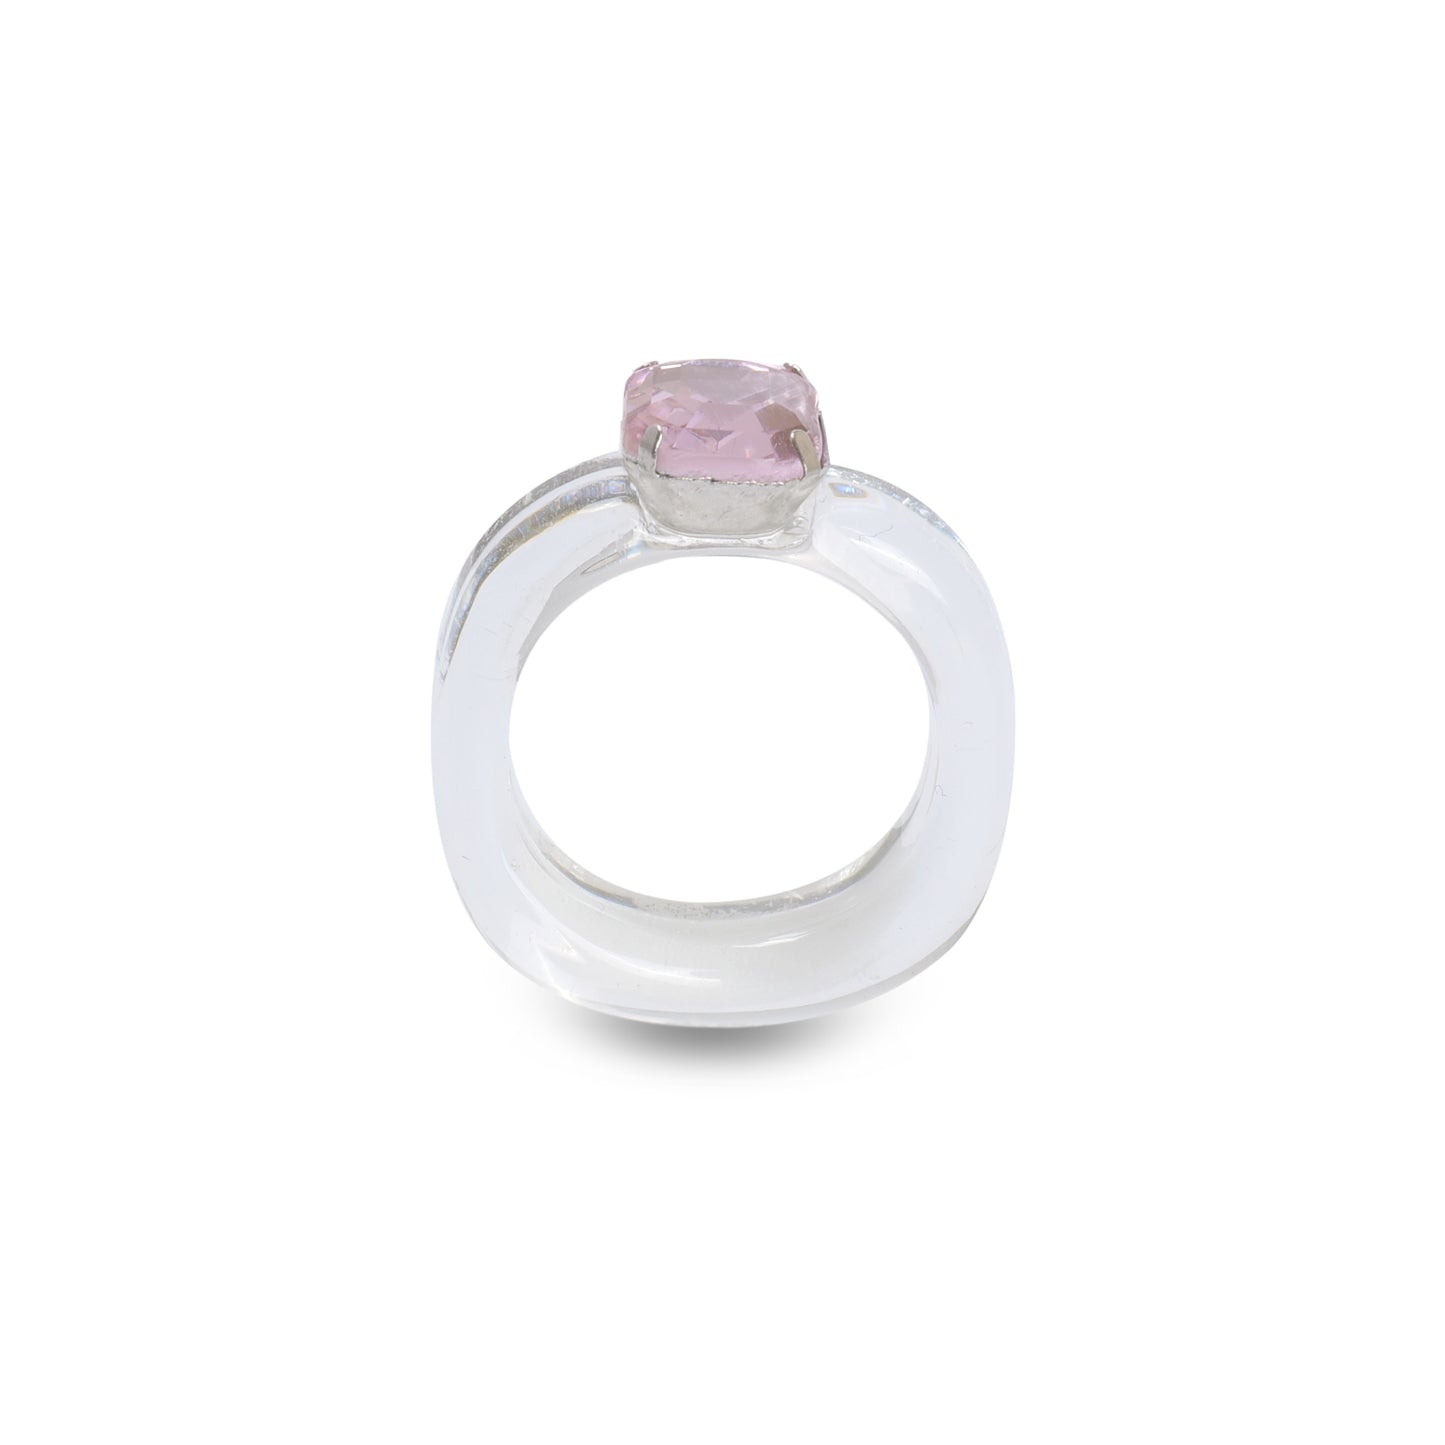 Candy Gemstone Acrylic Ring White/Pink Stone